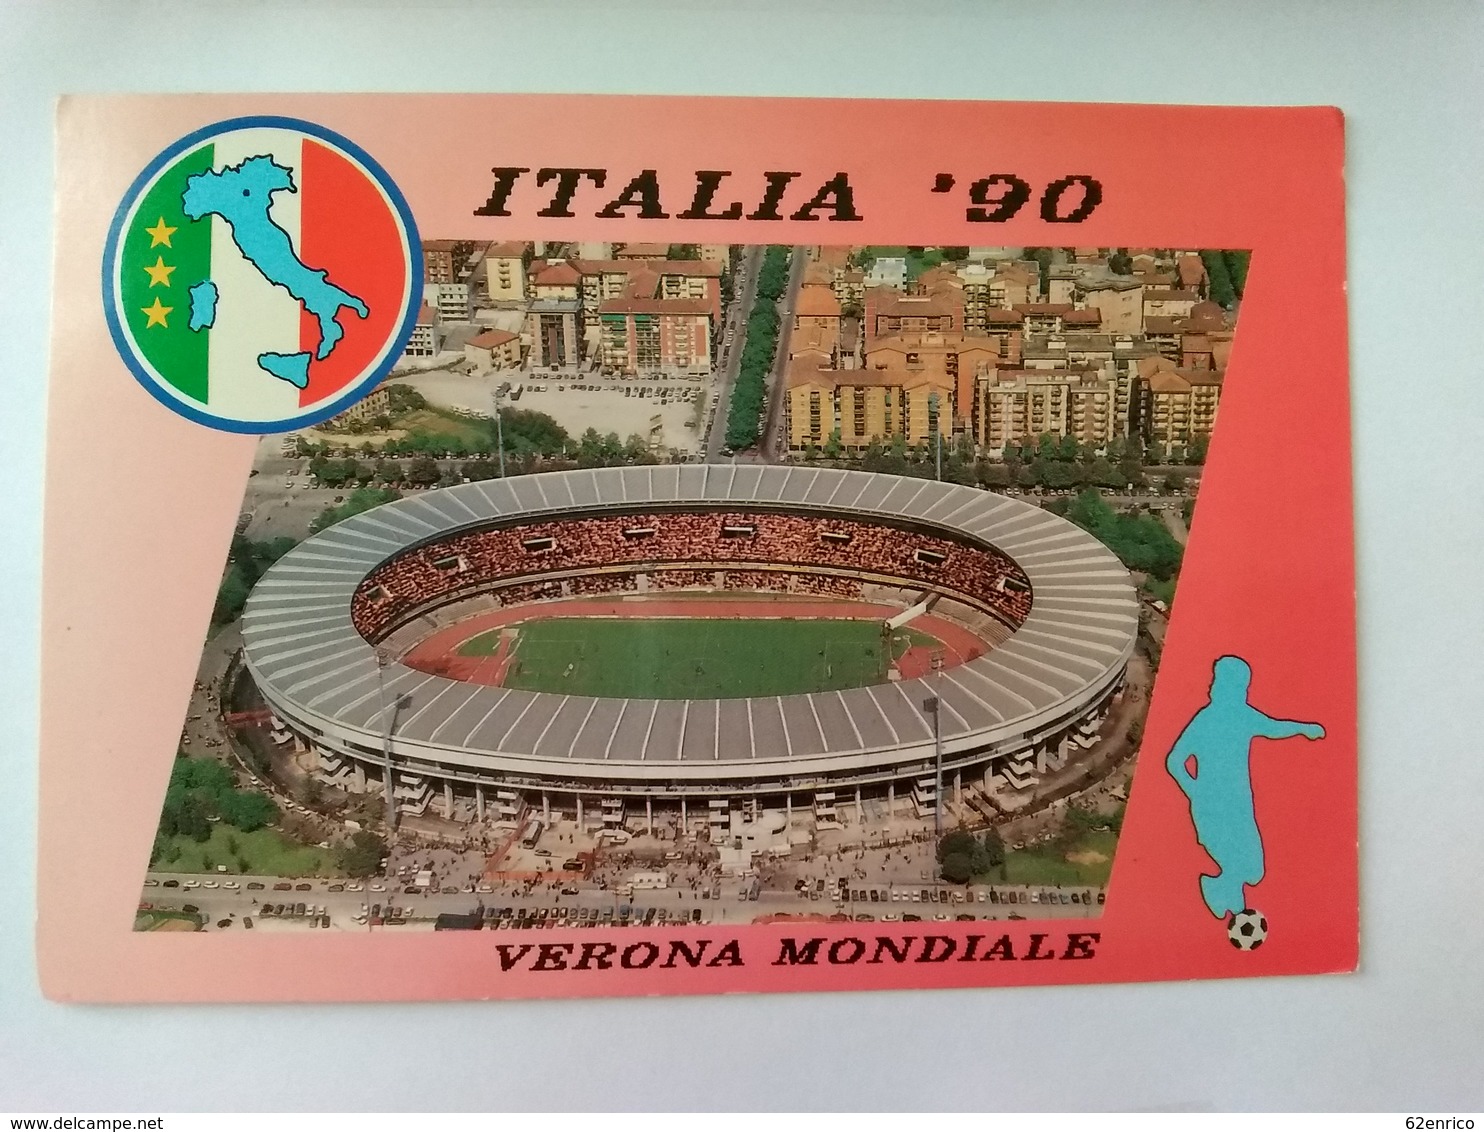 ITALIA 90 VERONA MONDIALE - STADIO - F.TO GRANDE - ANNULLO POSTALE - Fussball